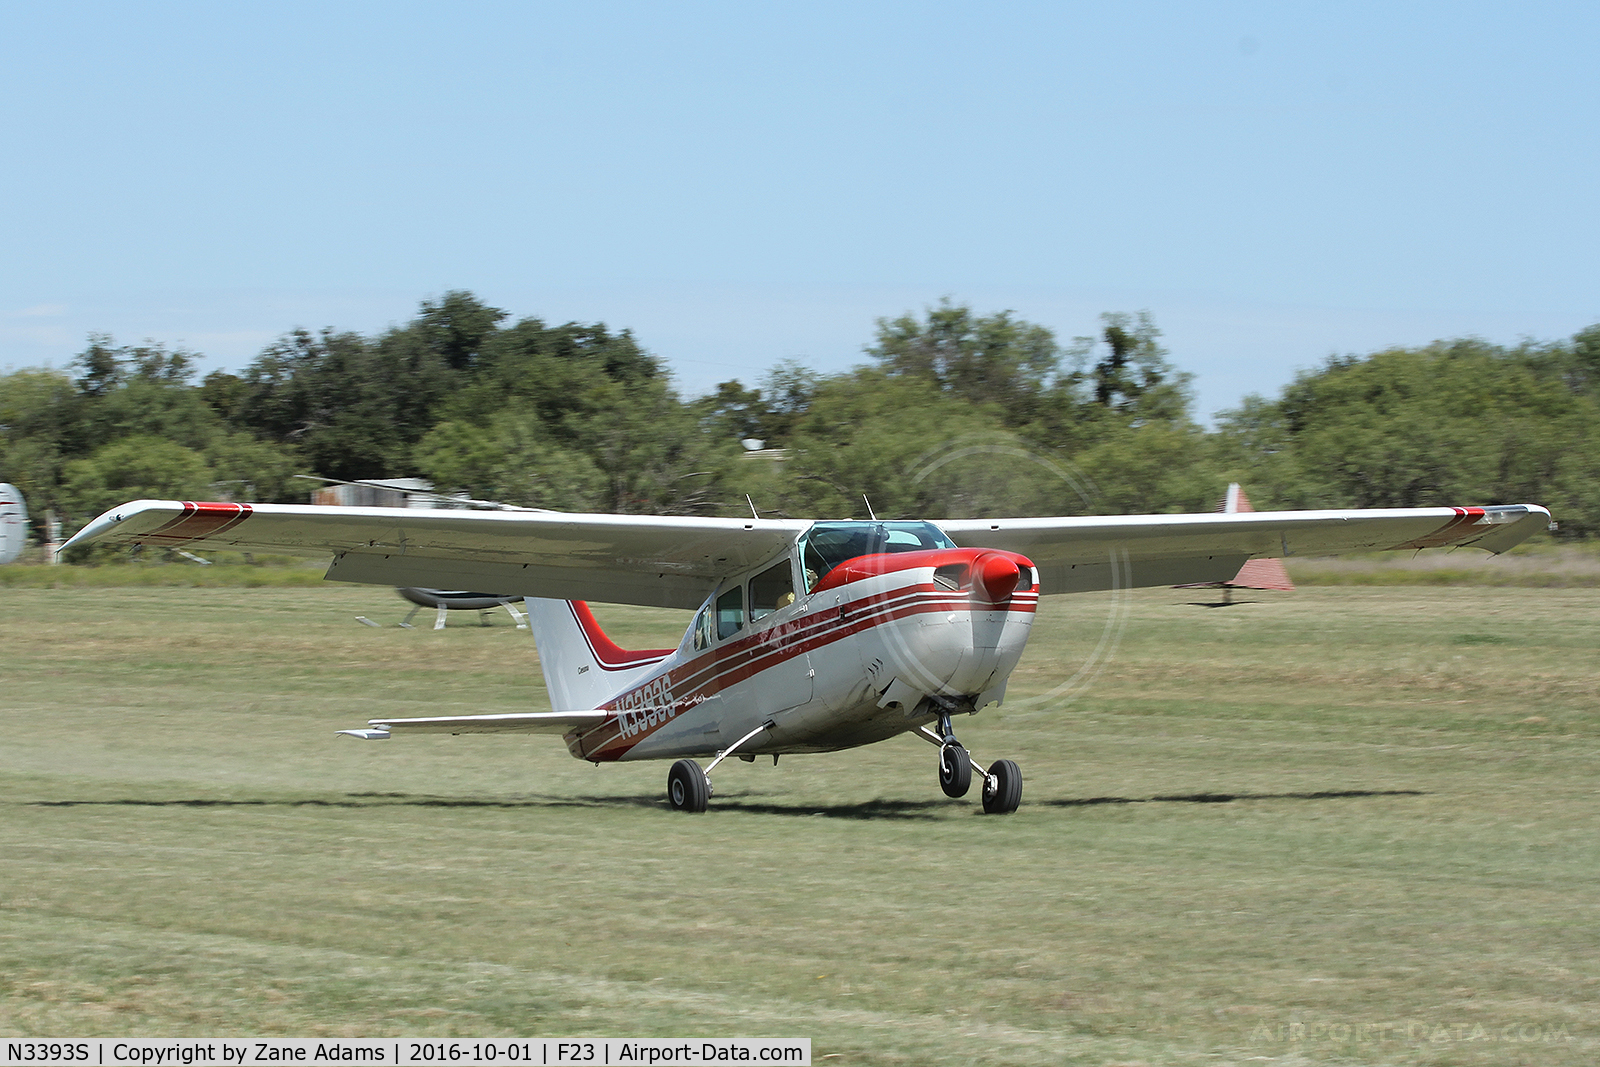 N3393S, 1969 Cessna 210J Centurion C/N 21059193, At the 2016 Ranger, Texas Fly-in